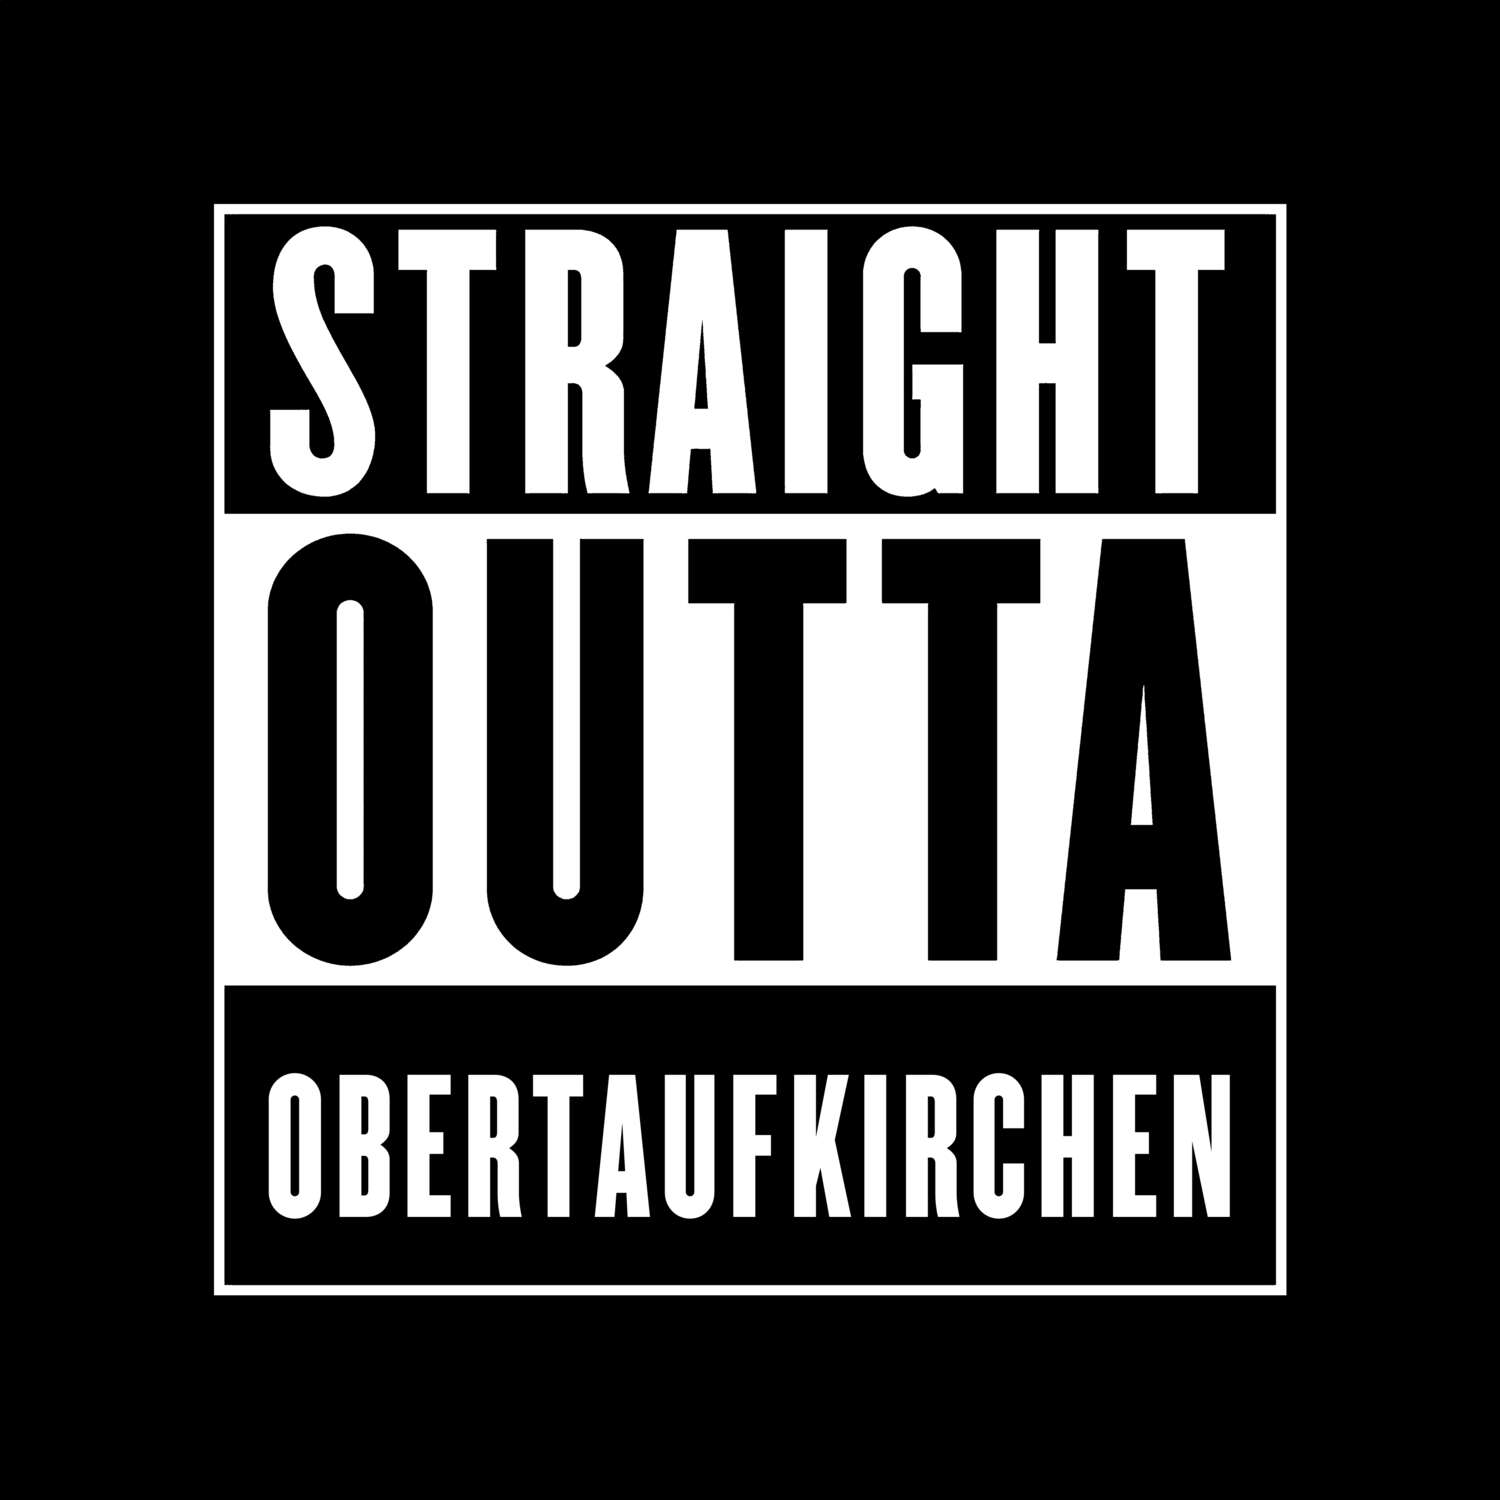 Obertaufkirchen T-Shirt »Straight Outta«